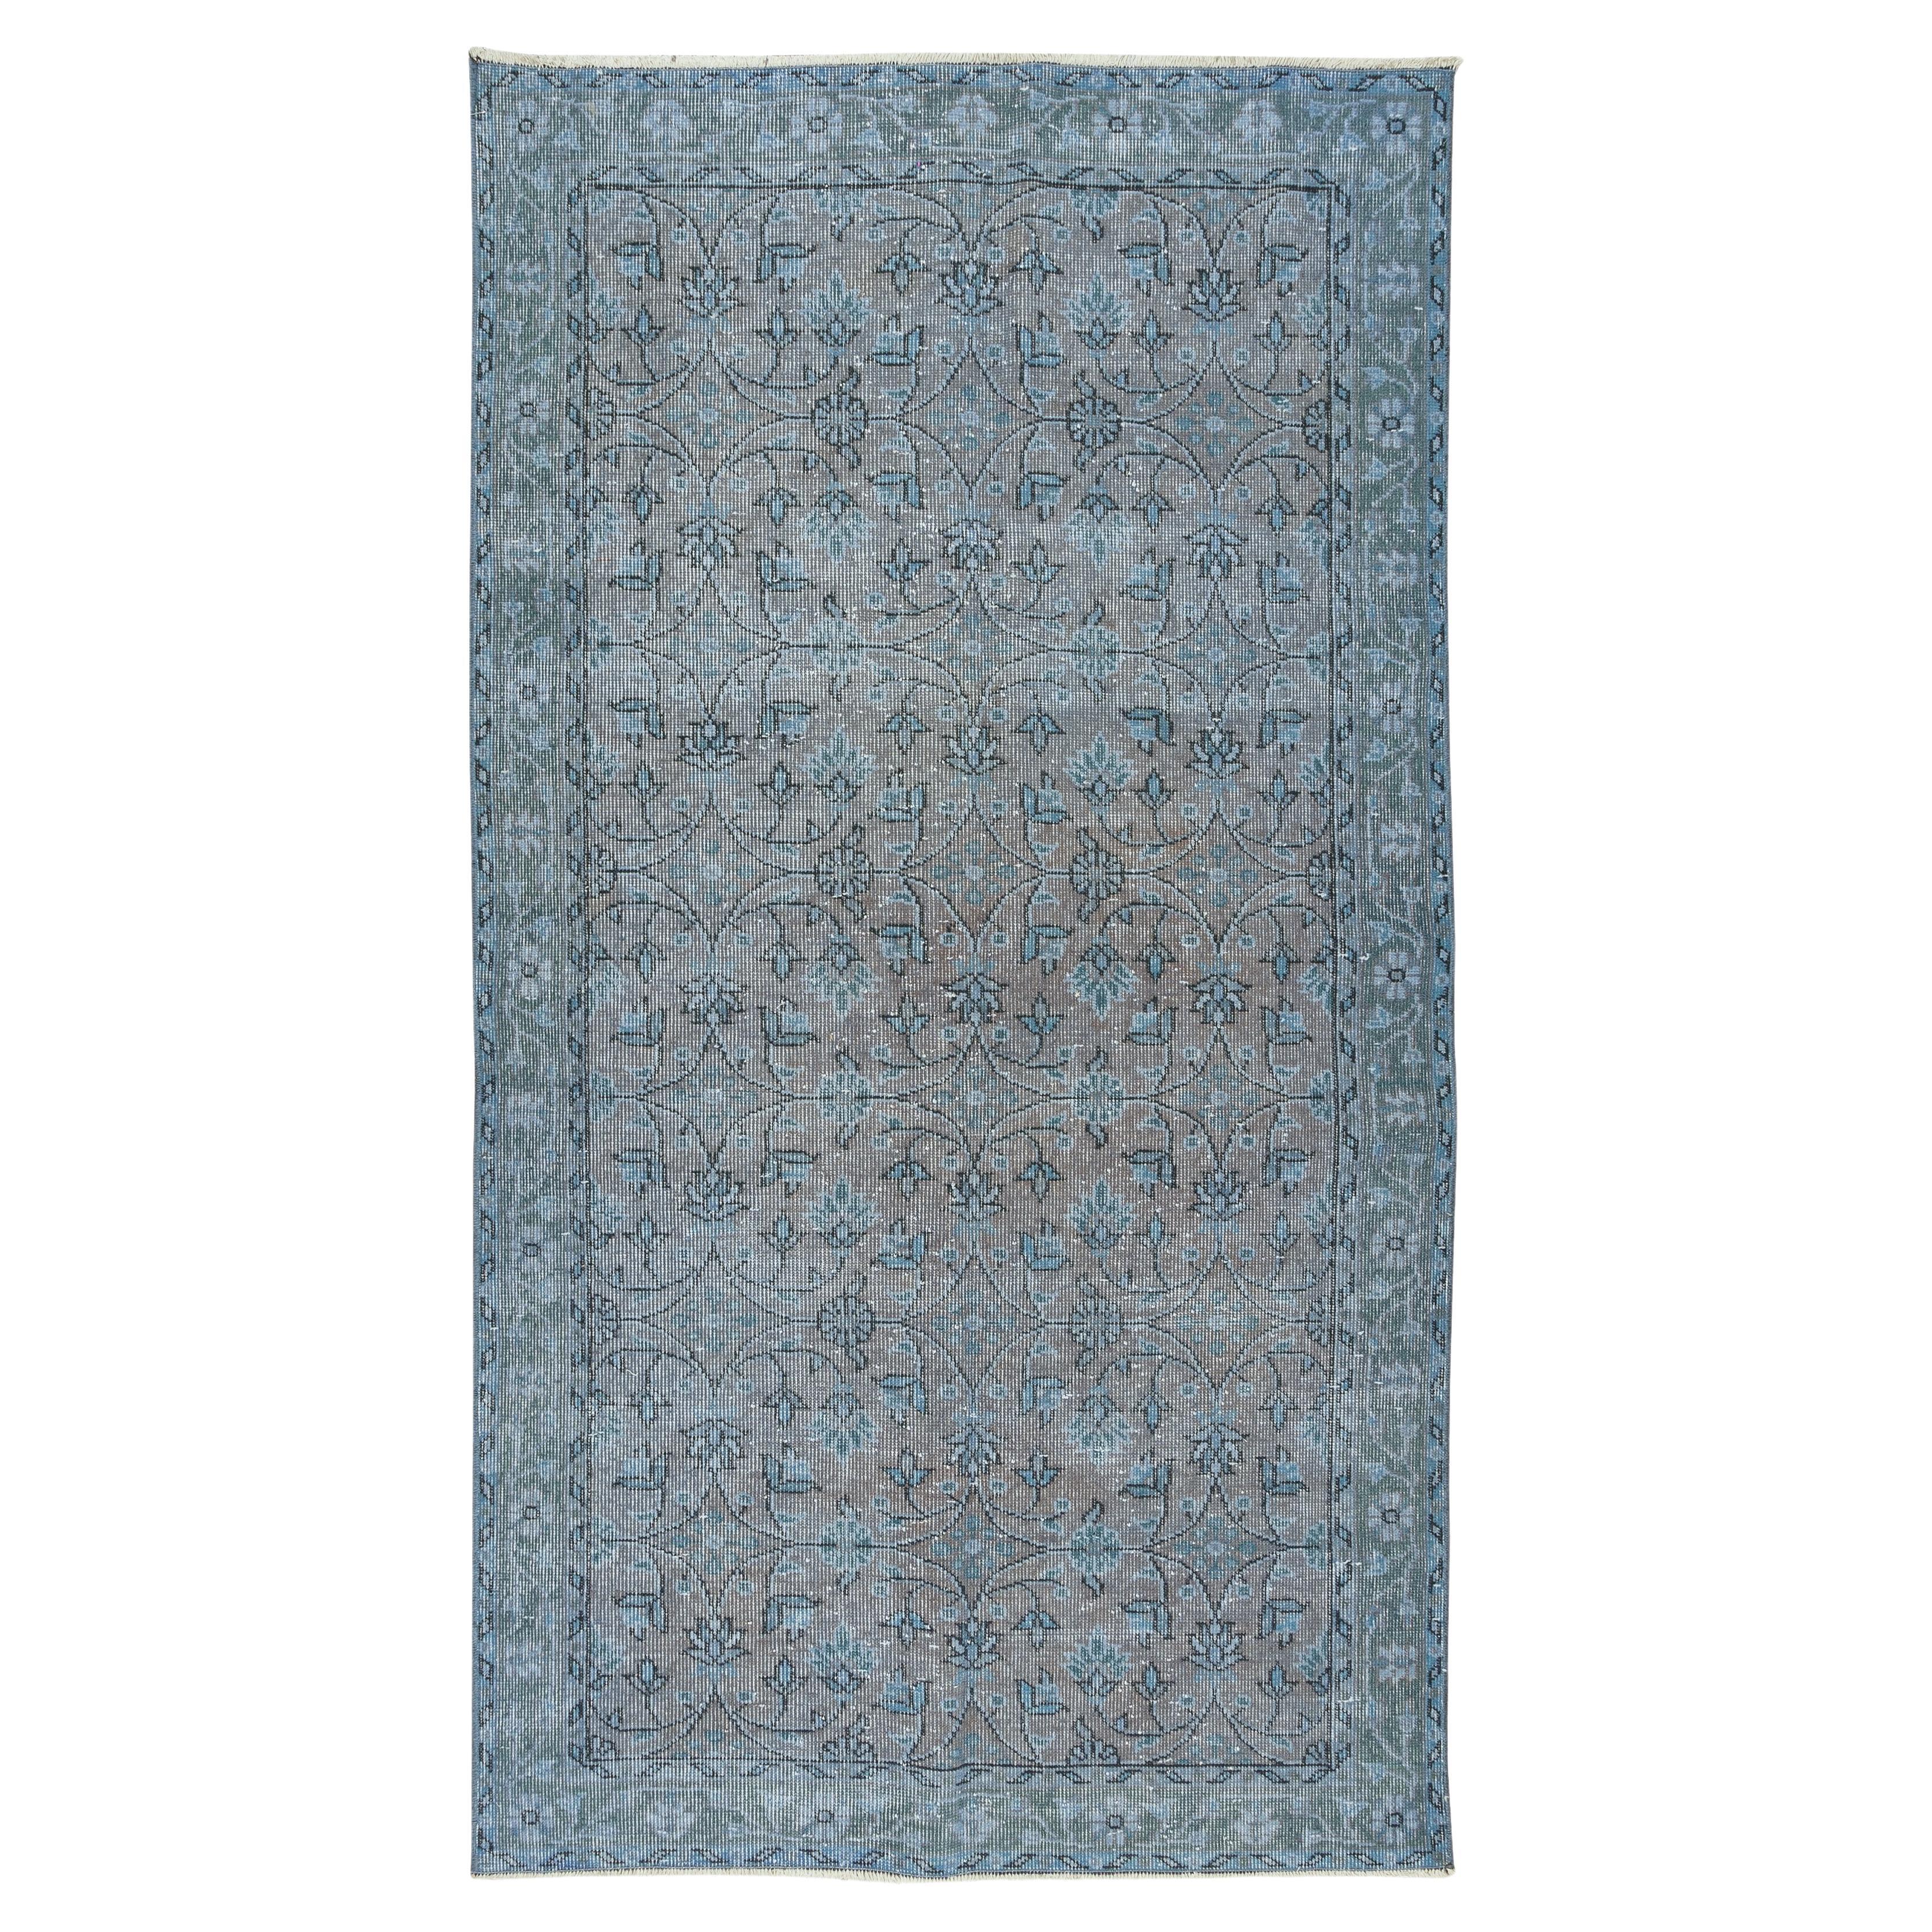 3.9x7.2 Ft Handgefertigter türkischer Vintage-Teppich in Blau, neu gefärbt, Ideal 4 Modern Interior